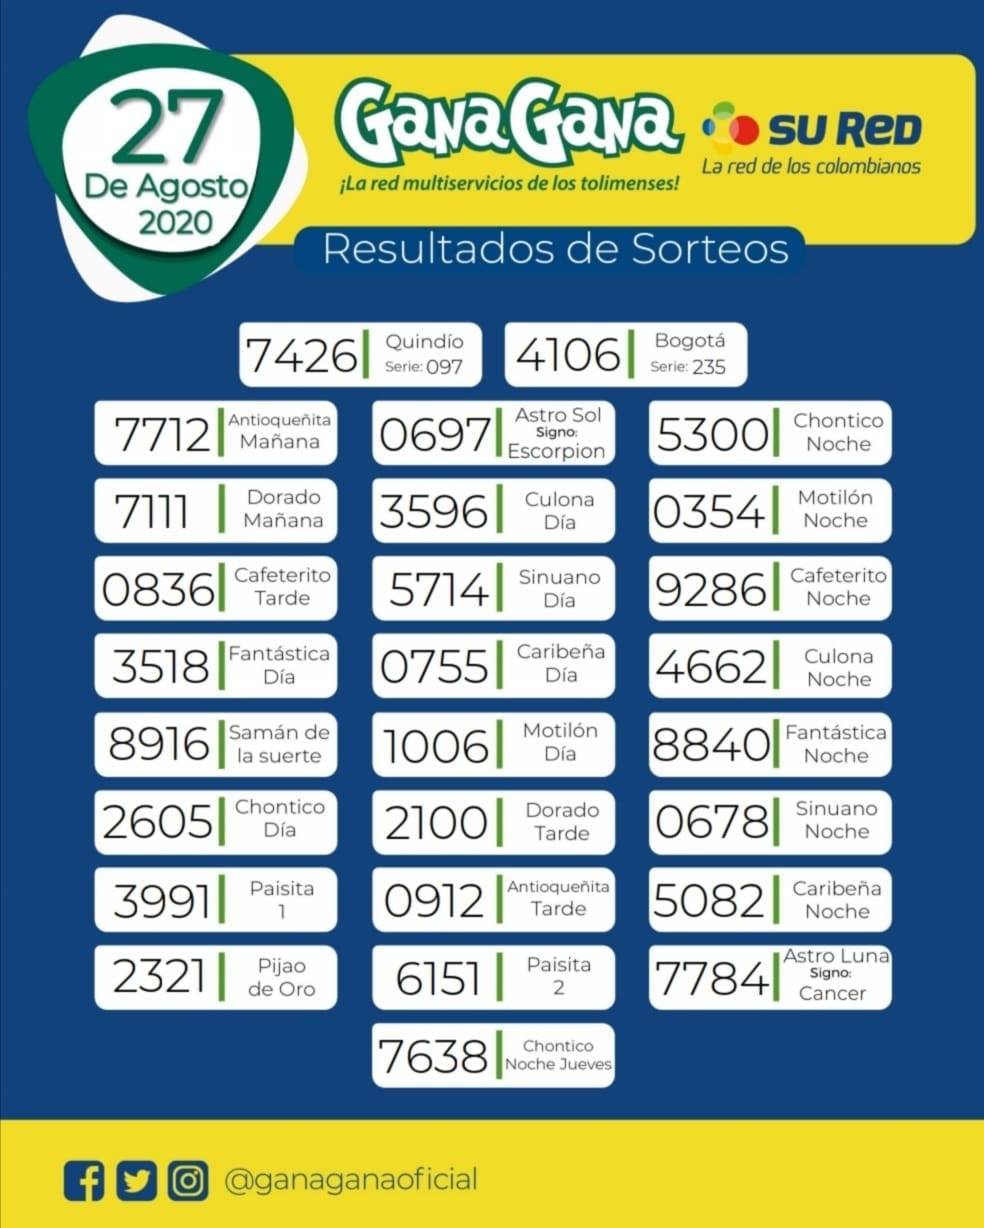 27 08 2020 resulatados loterias y sorteos